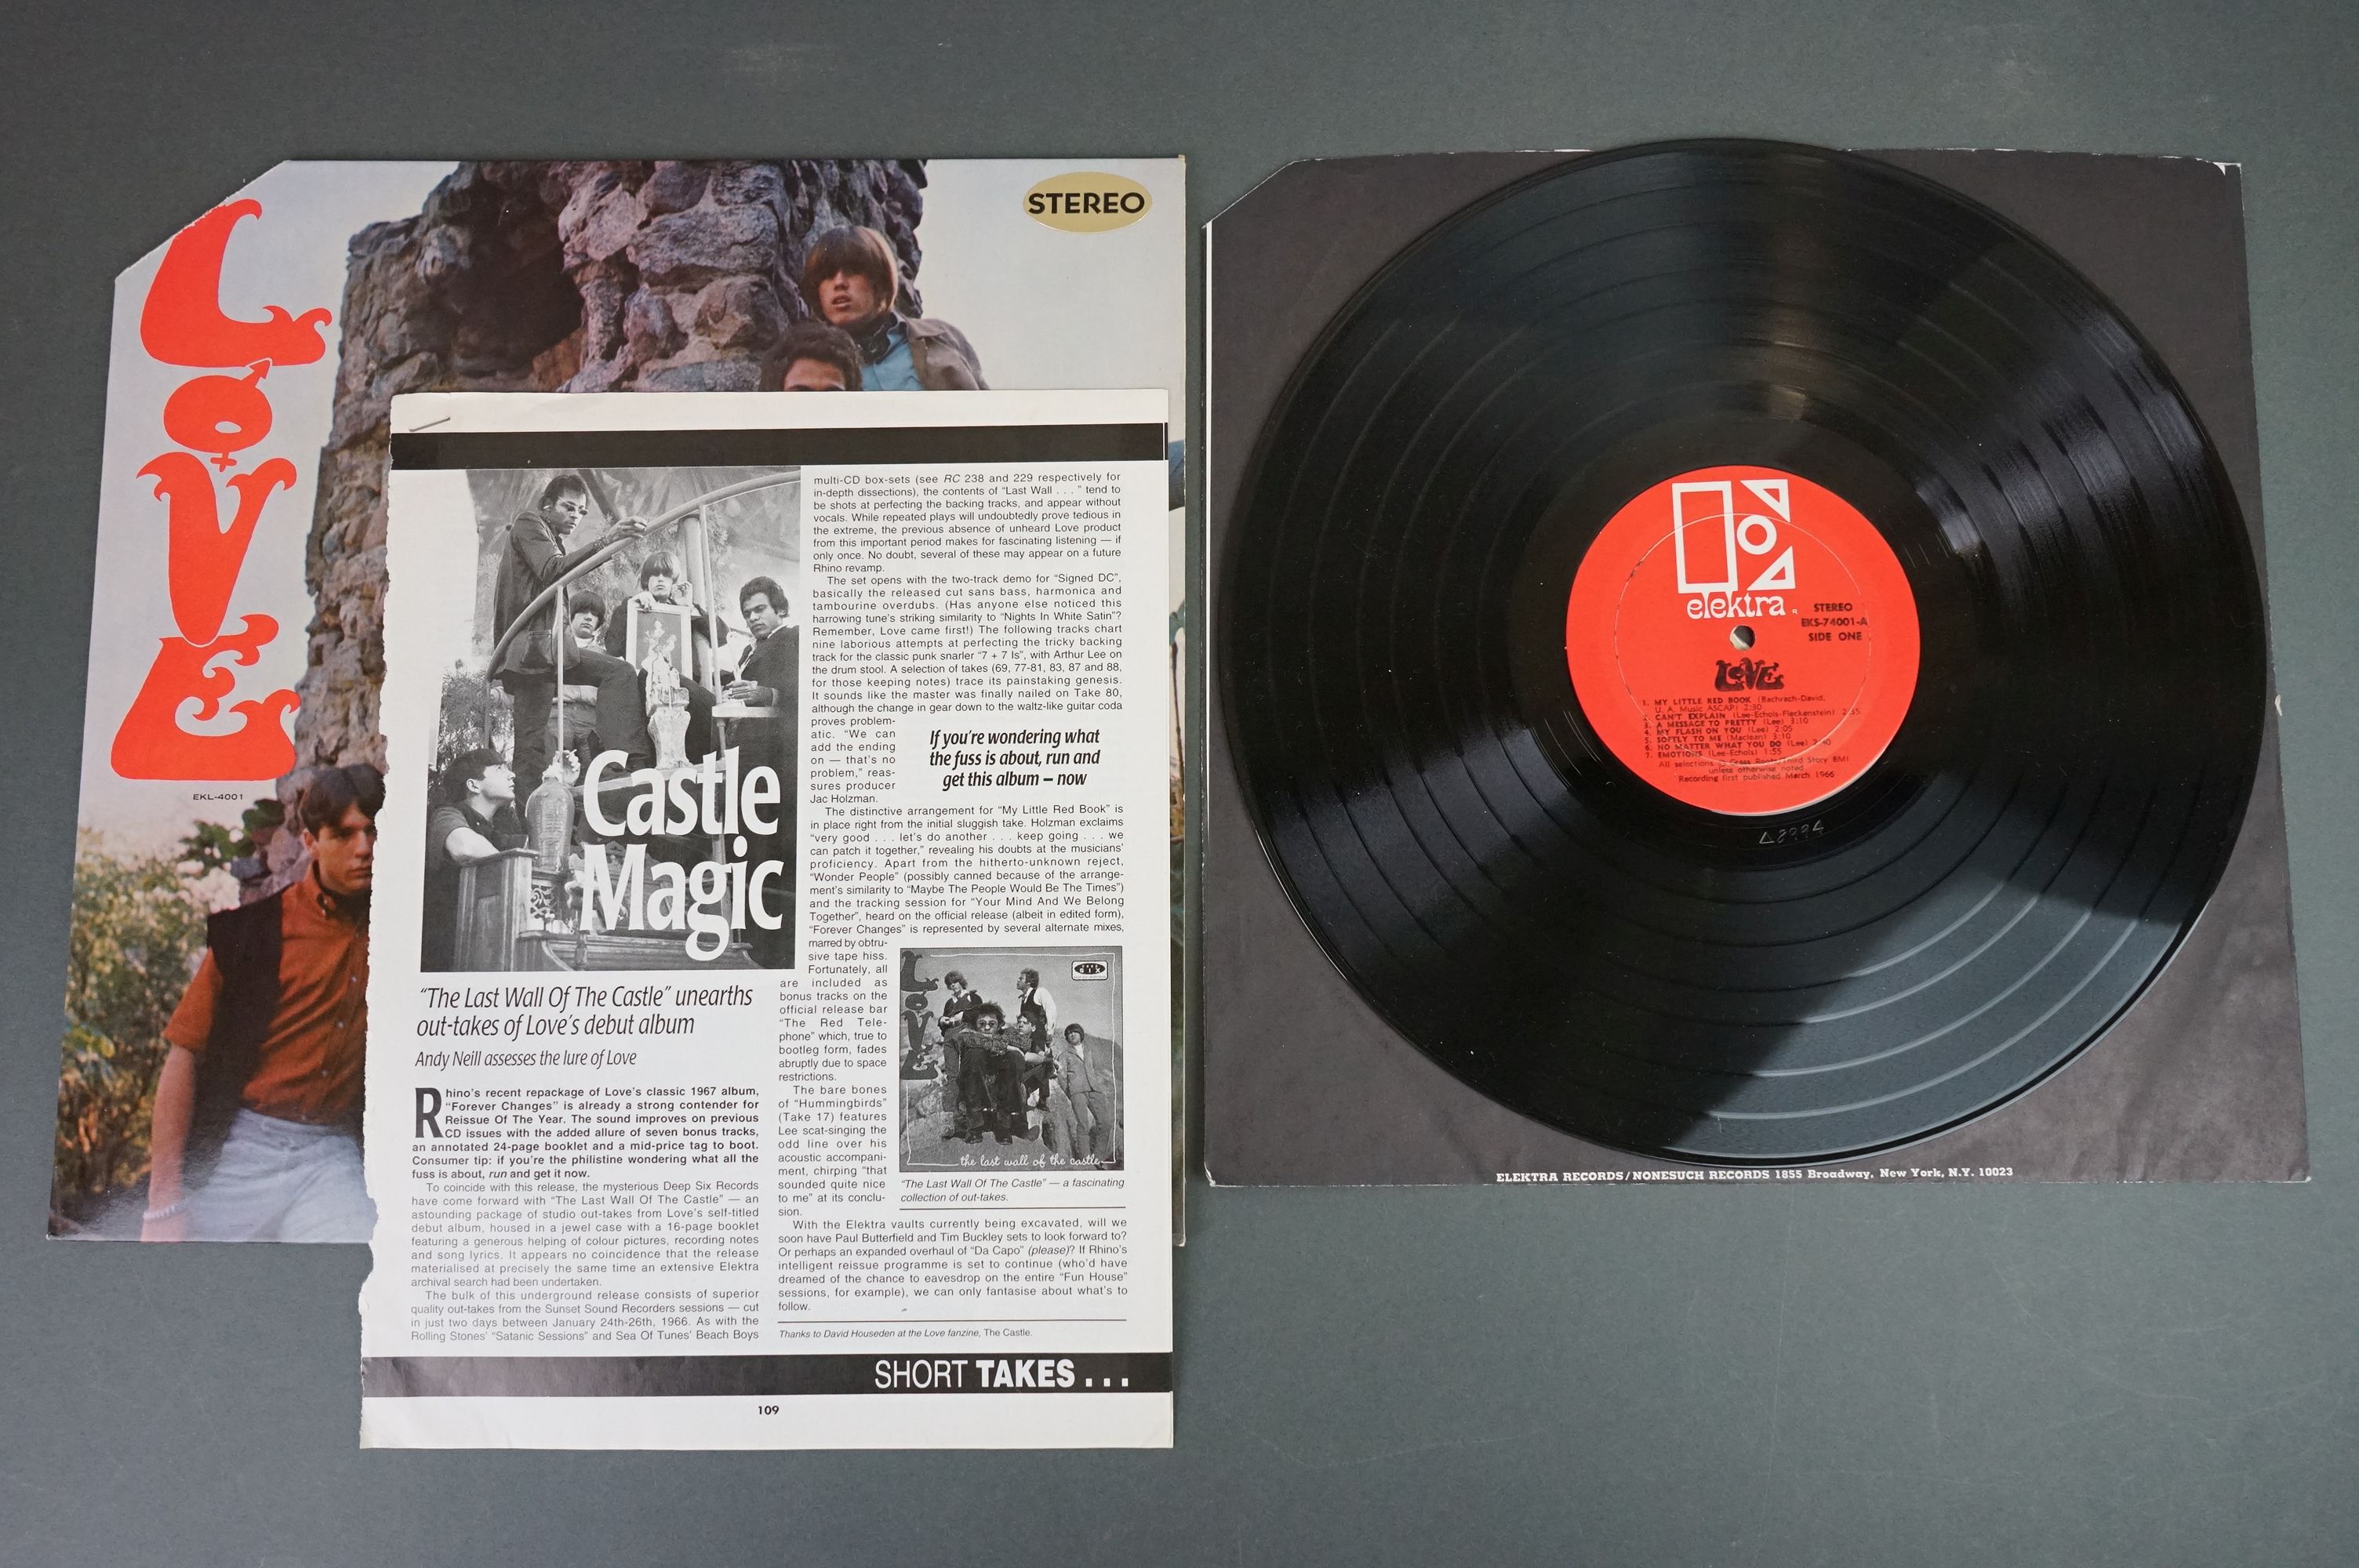 Vinyl - Love self titled EKS74001 orange label, Recording first published March 1966 bottom of - Image 2 of 4